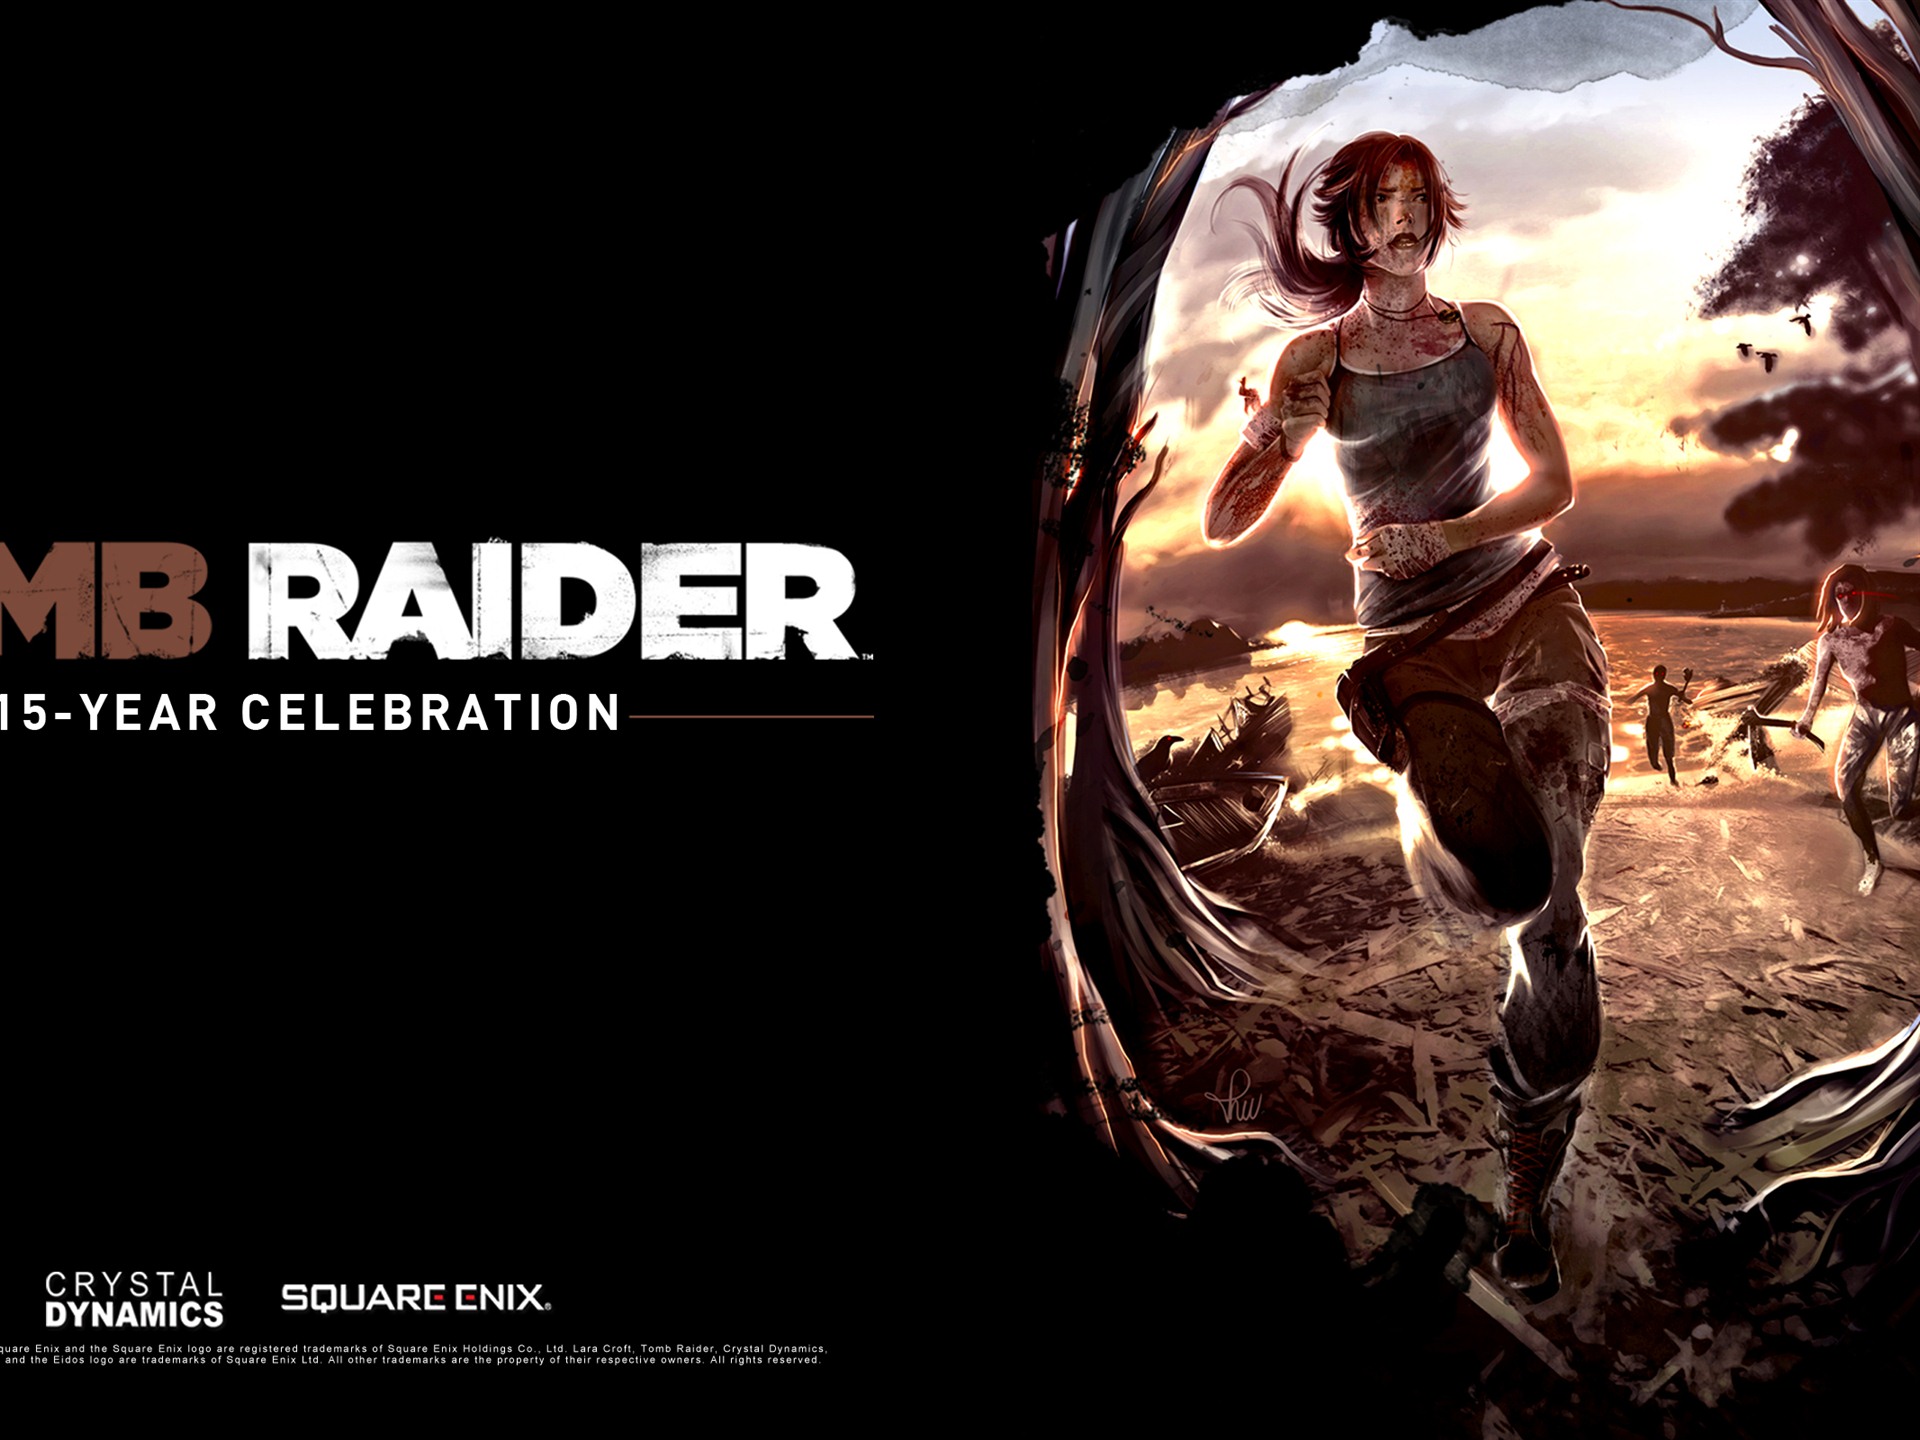 Tomb Raider 15-Year Celebration 古墓丽影15周年纪念版 高清壁纸8 - 1920x1440